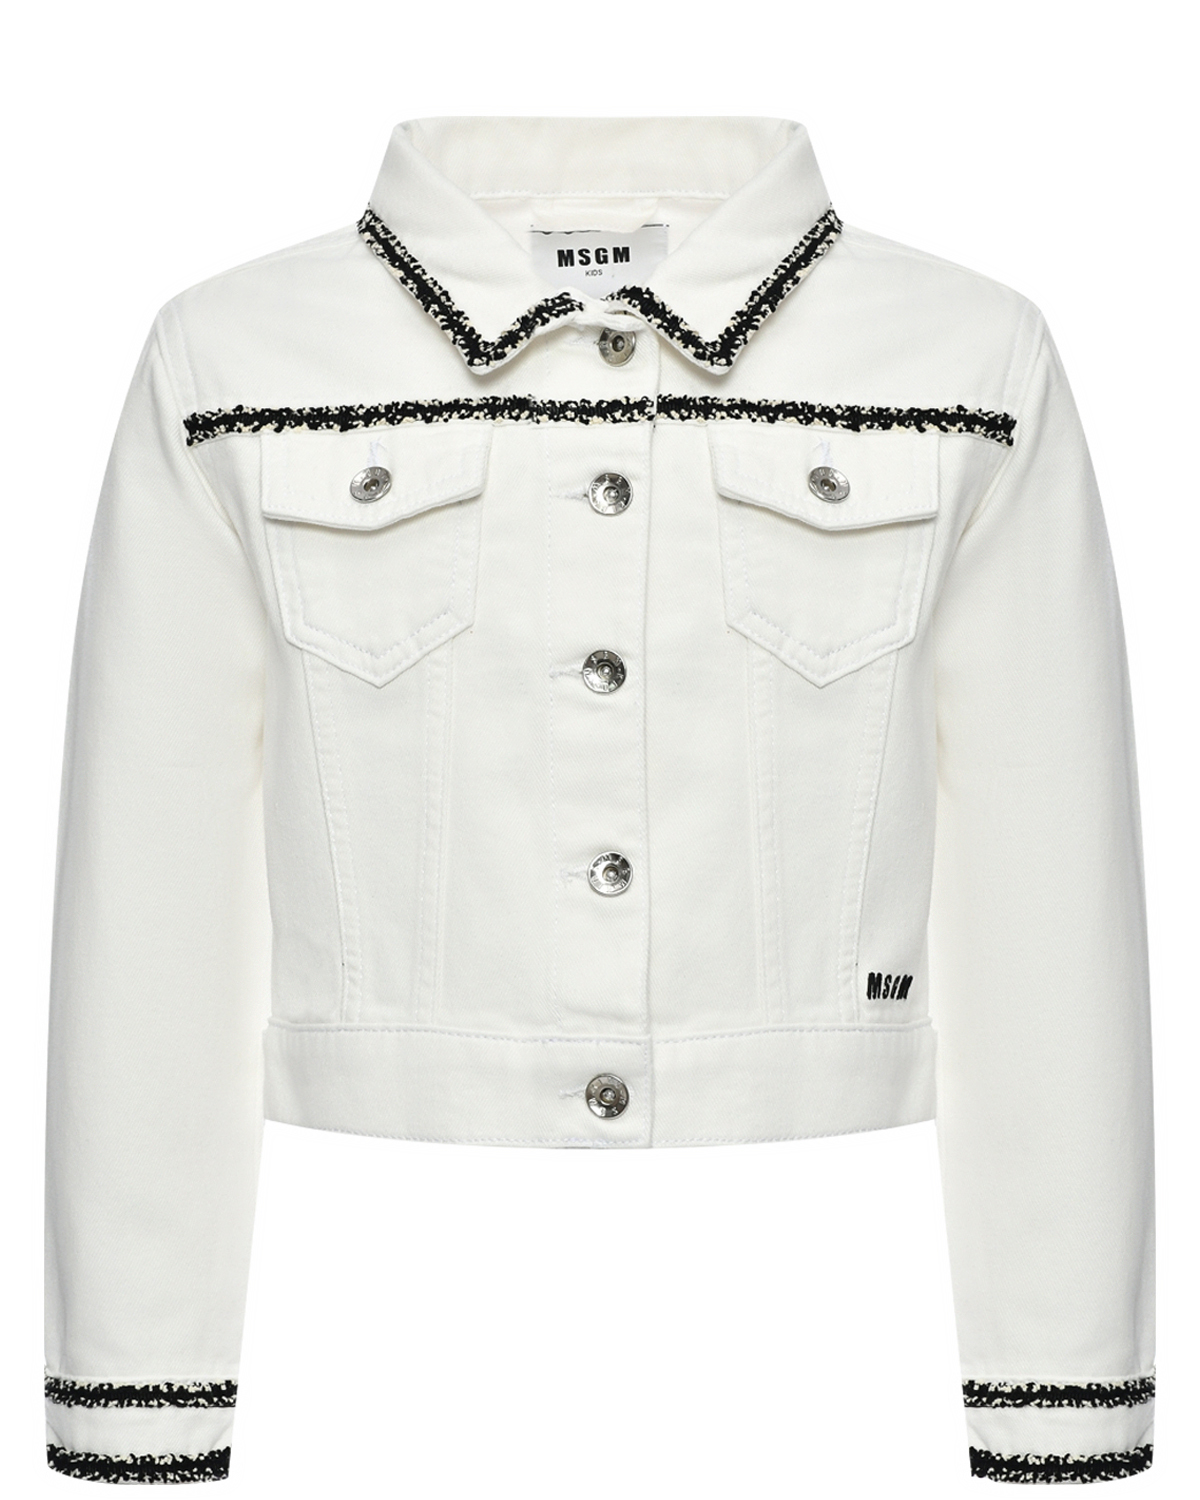 Джинсовая куртка с отделкой бисером MSGM, размер 152, цвет белый